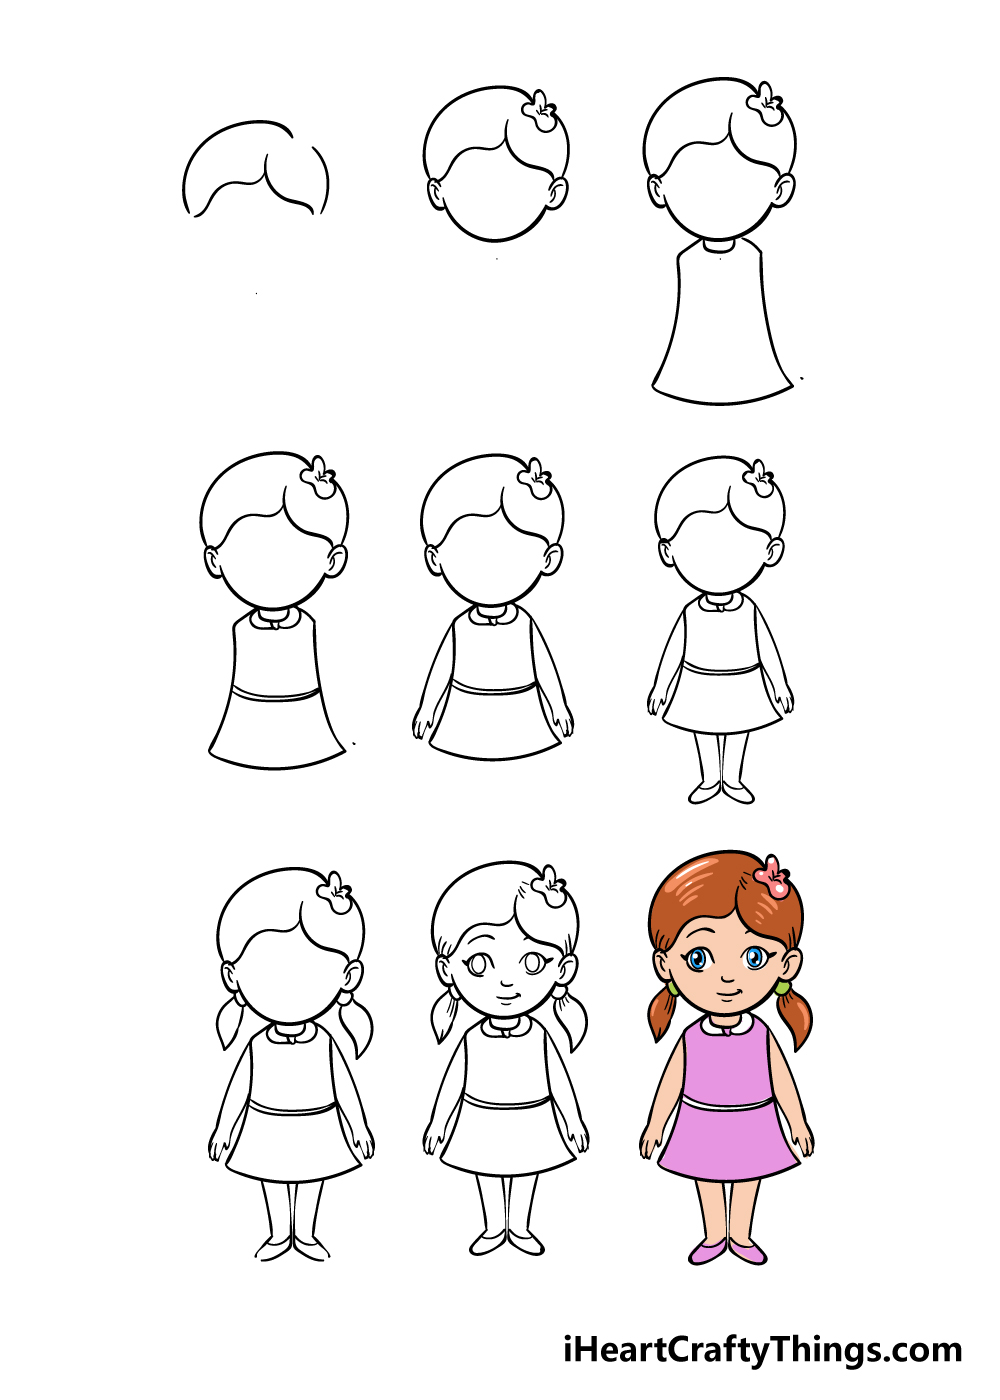 cartoon girl in 9 steps - Hướng dẫn chi tiết cách vẽ cô gái đơn giản với 9 bước cơ bản